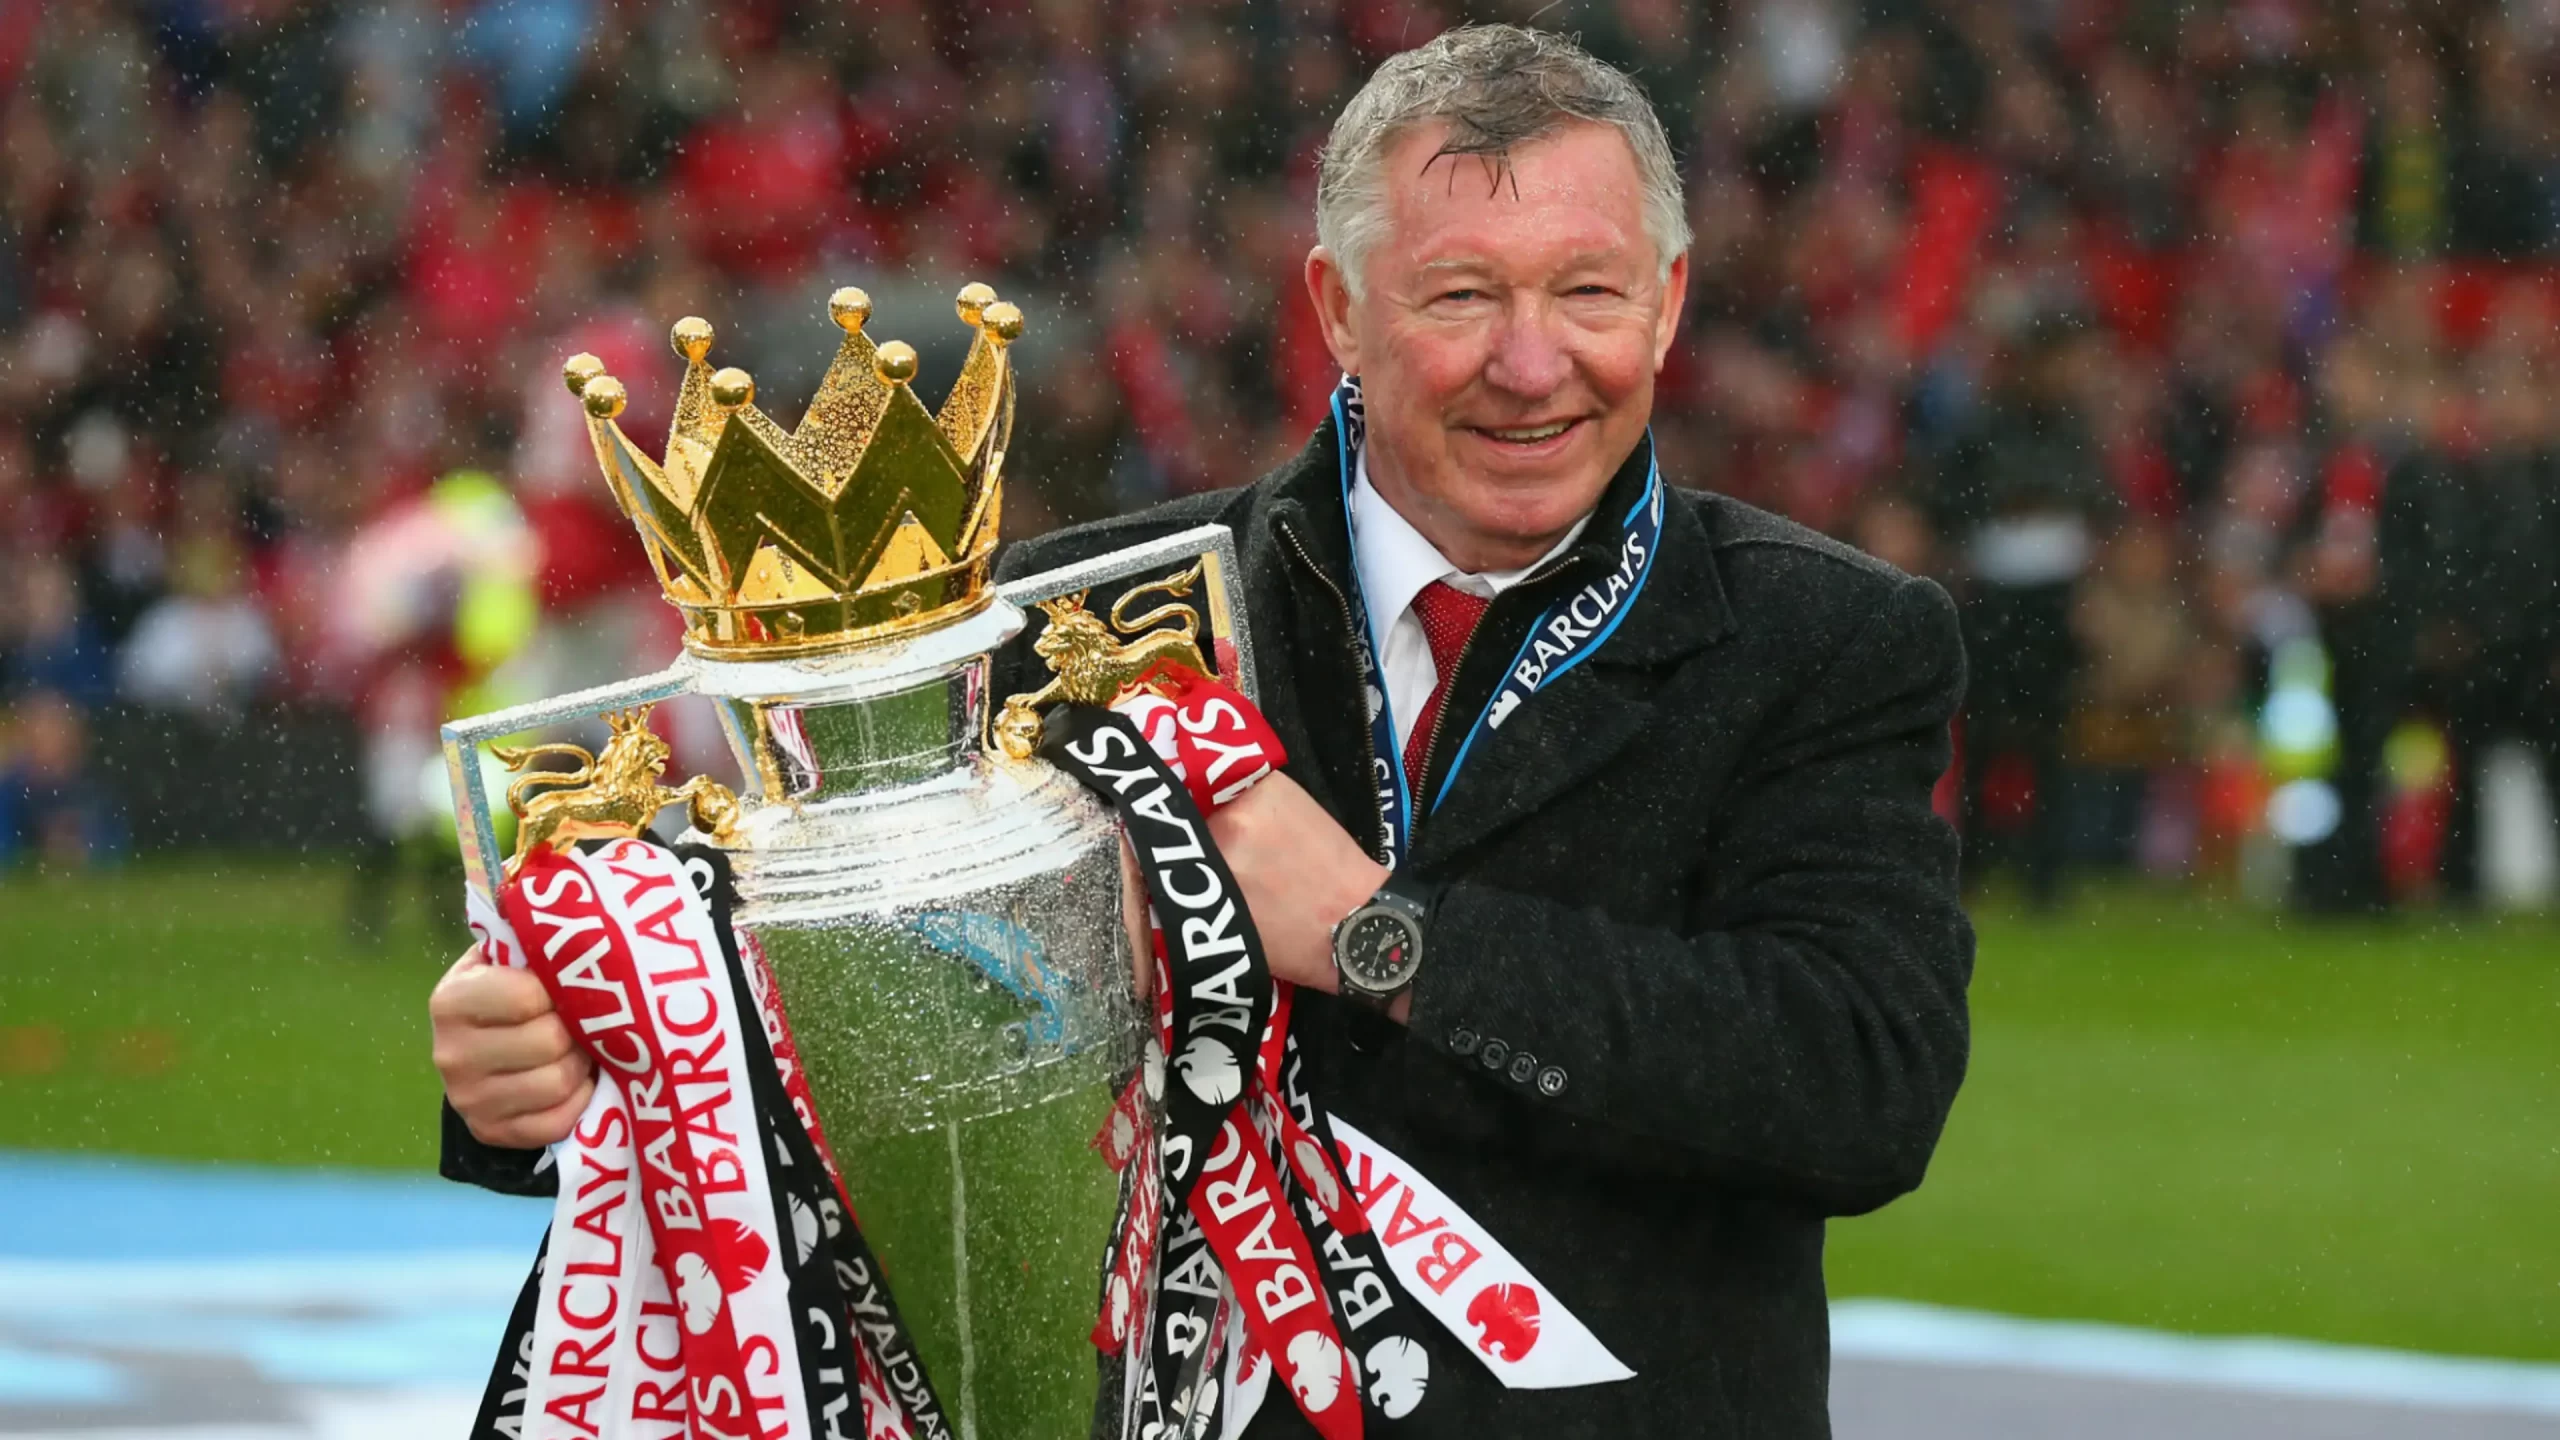 Manchester United futbol takımının teknik direktörü Sir Alex Ferguson 26 yılı aşkın bir sürenin ardından, sezon sonunda bu görevi bırakacağını açıkladı.